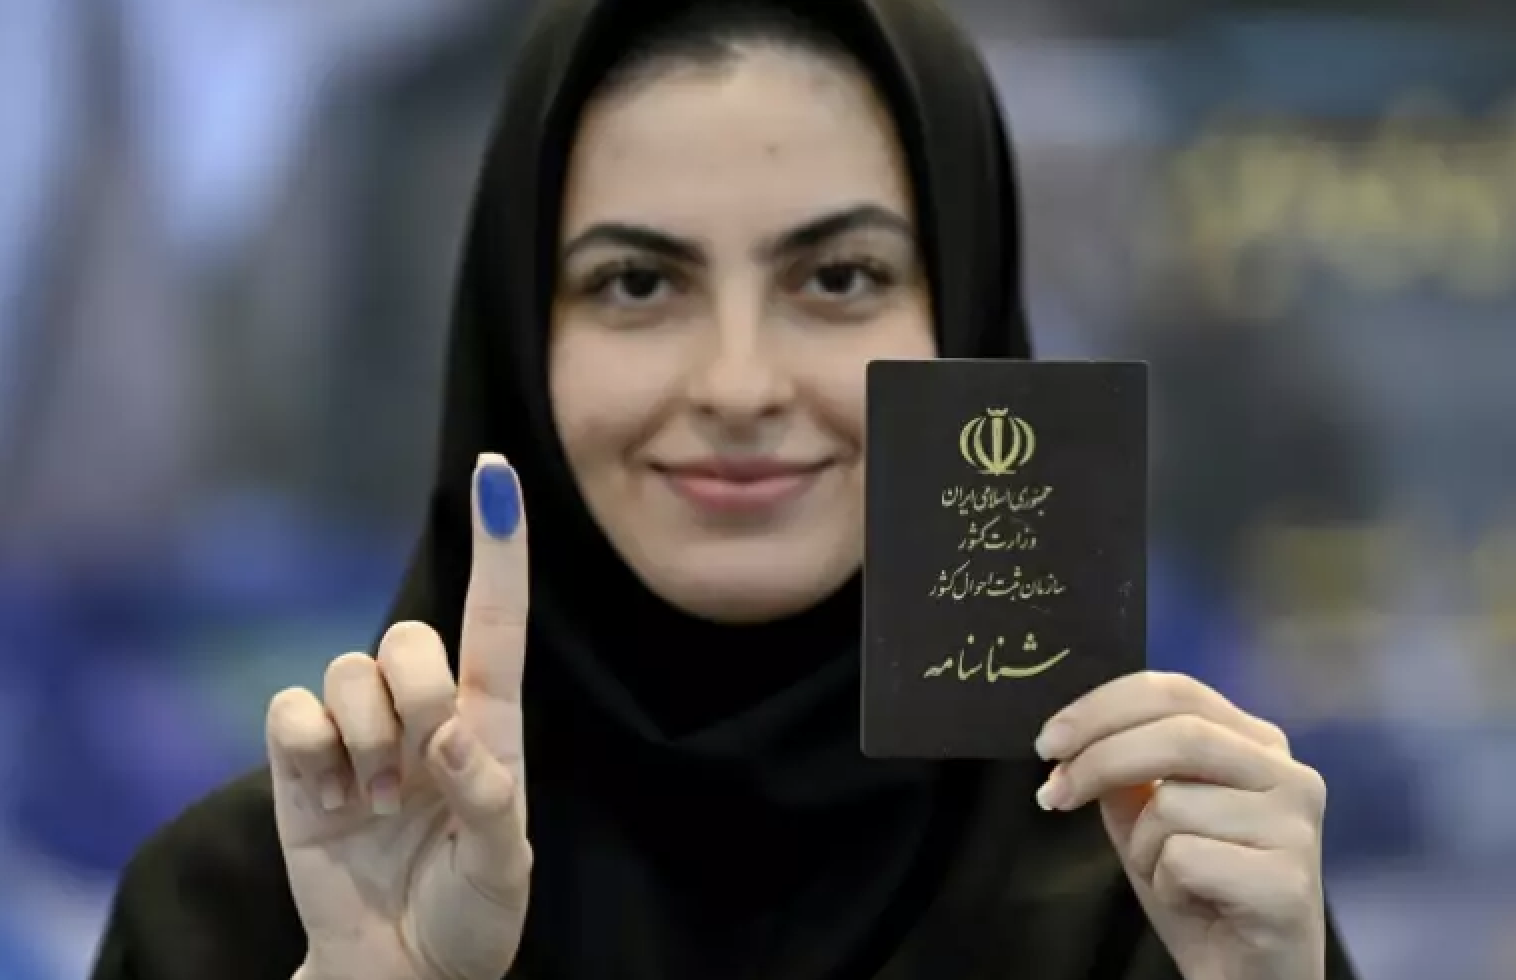 النسب المتواضعة والخجولة للمشاركات الشعبية في الانتخابات الرئاسية الإيرانية لم تكن مفاجئة للمراقبين